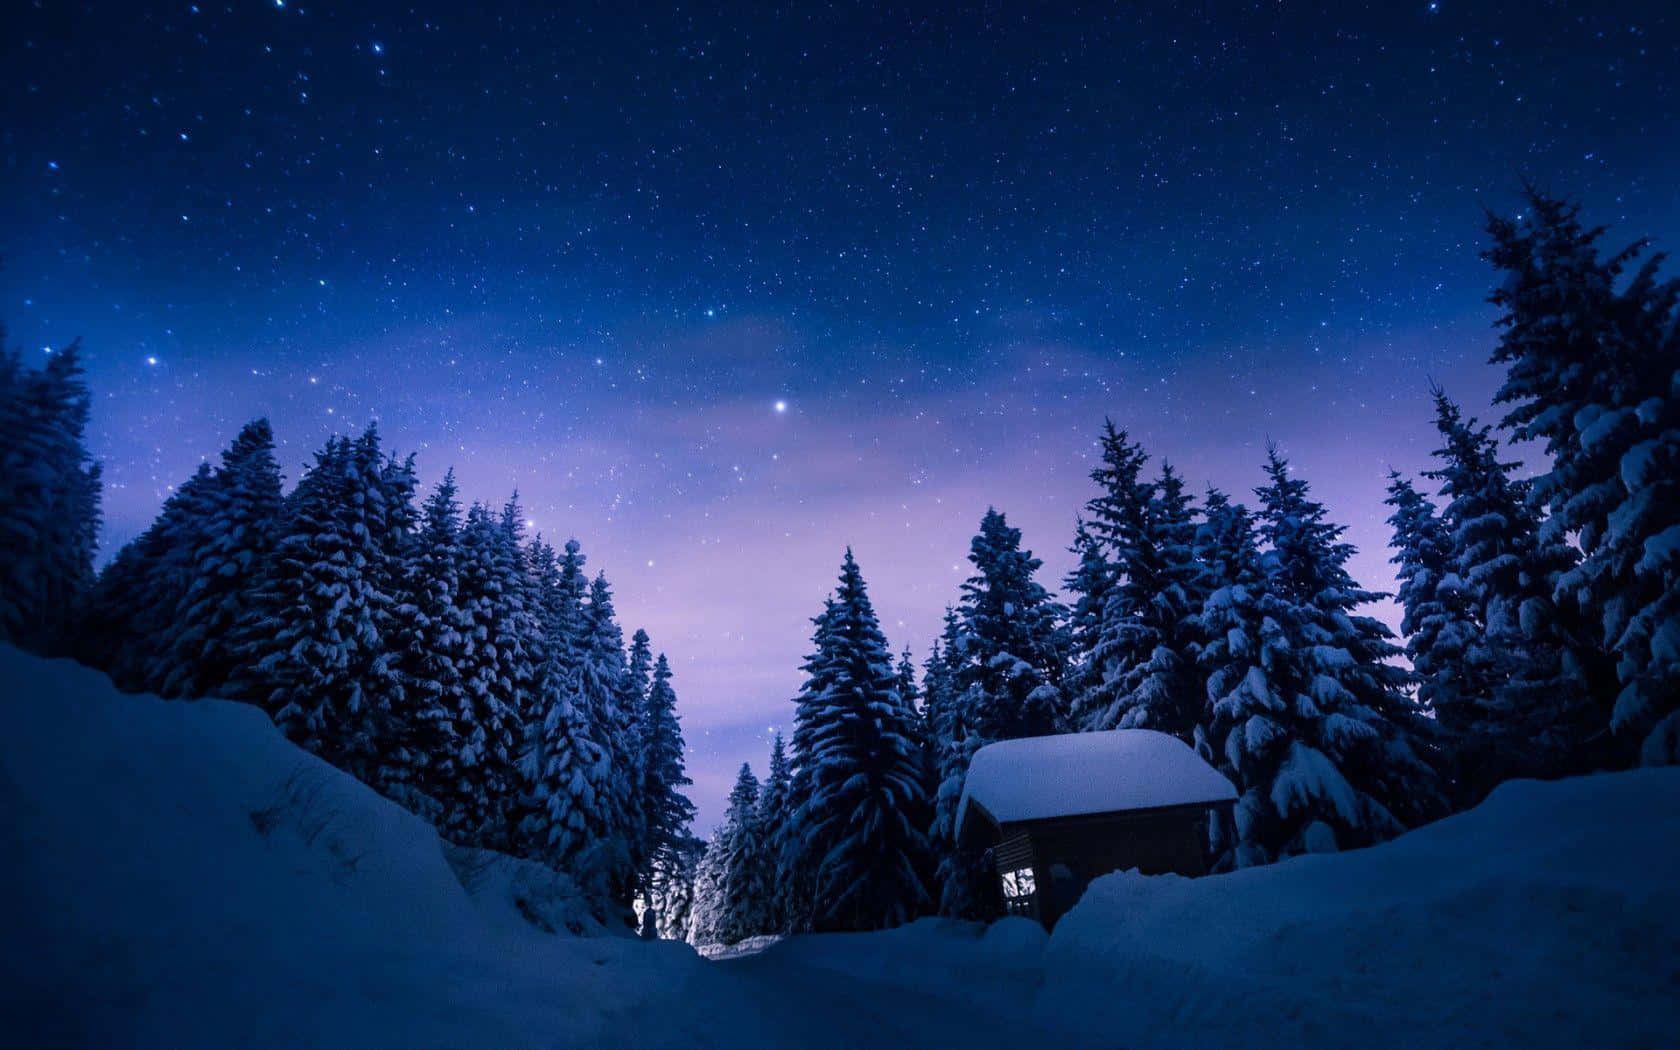 "A Sparkling Winter Night" Wallpaper